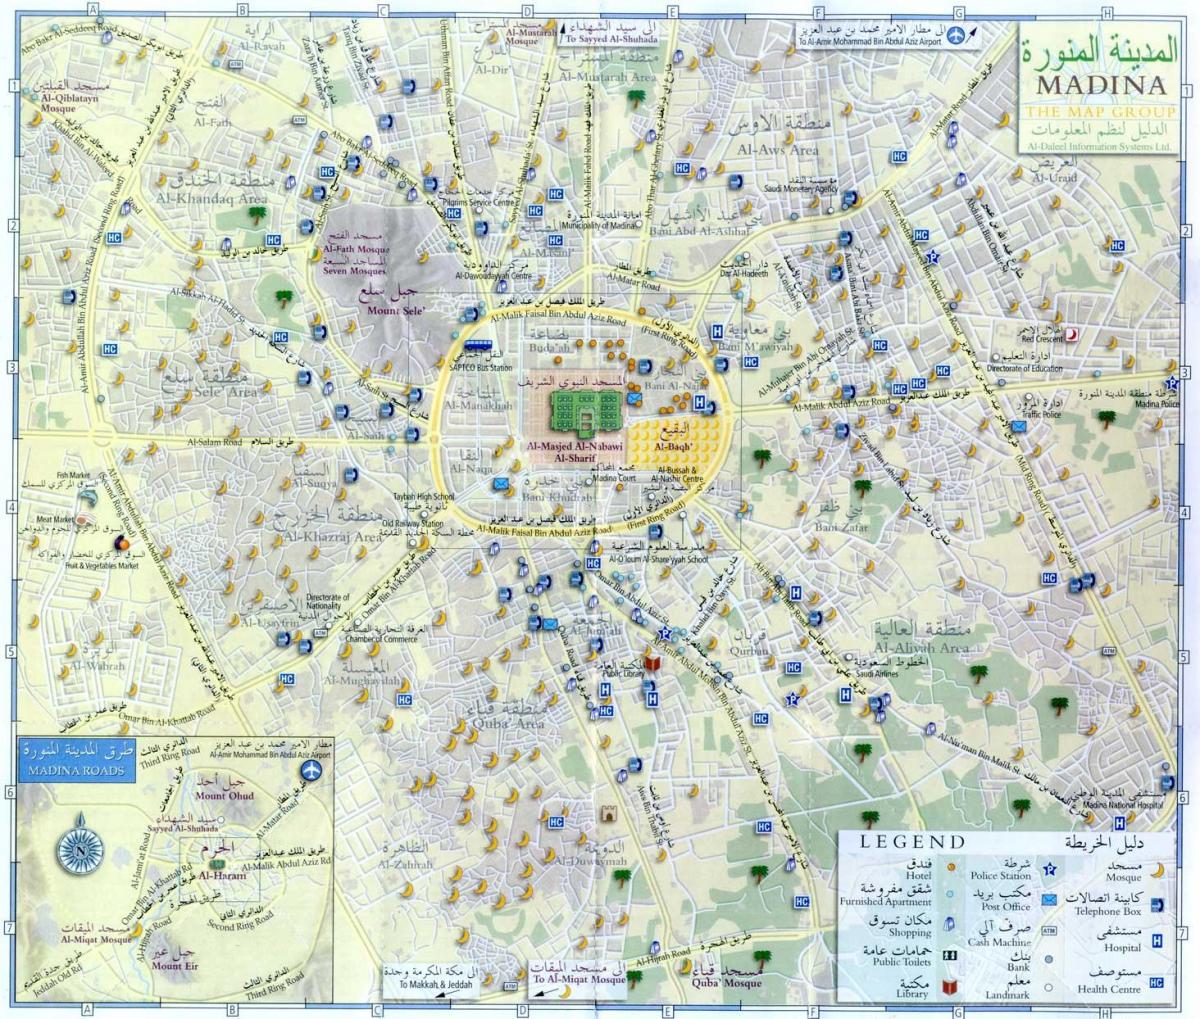 Mappa del centro della Mecca (Makkah)